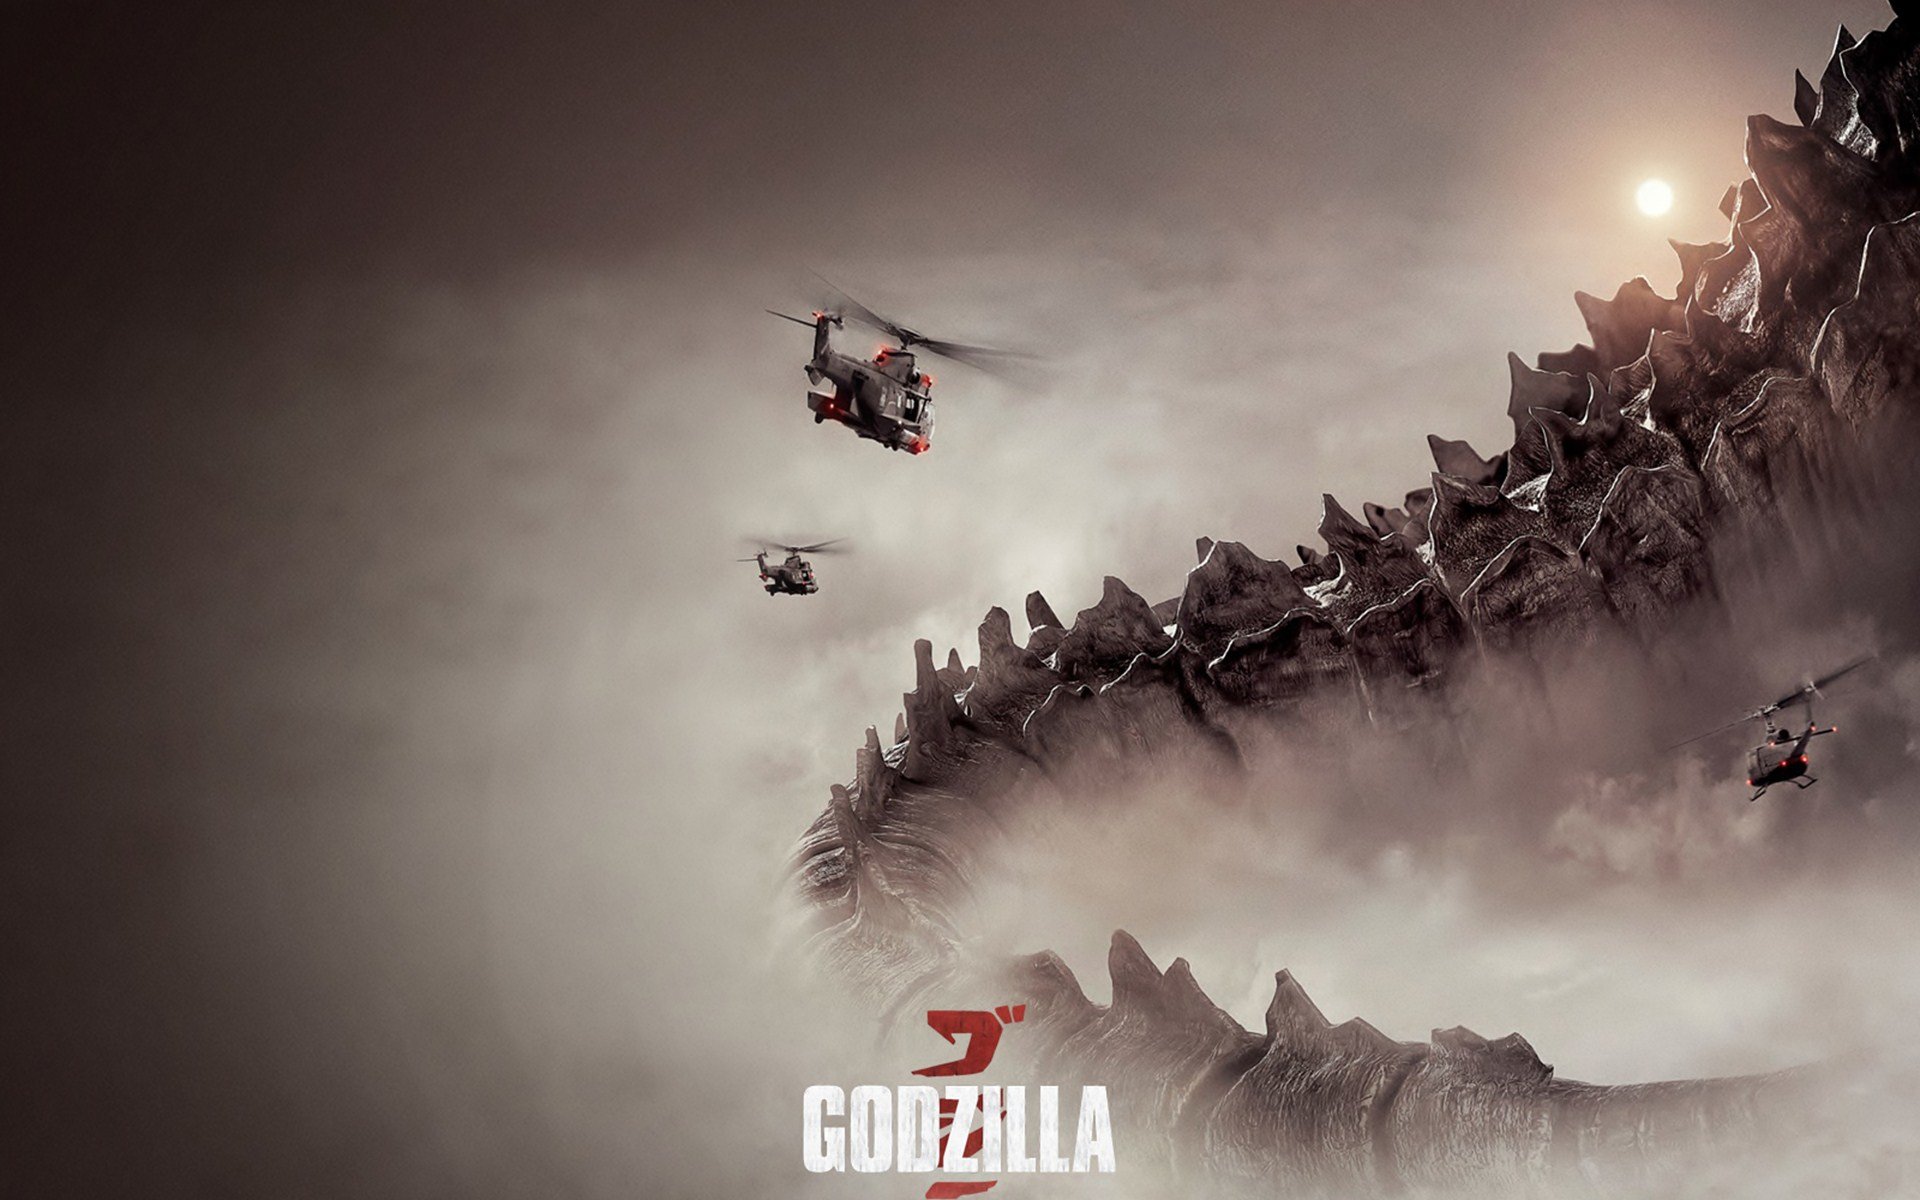 Best Godzilla (2014) wallpaper ID:315647 for High Resolution hd 1920x1200 PC